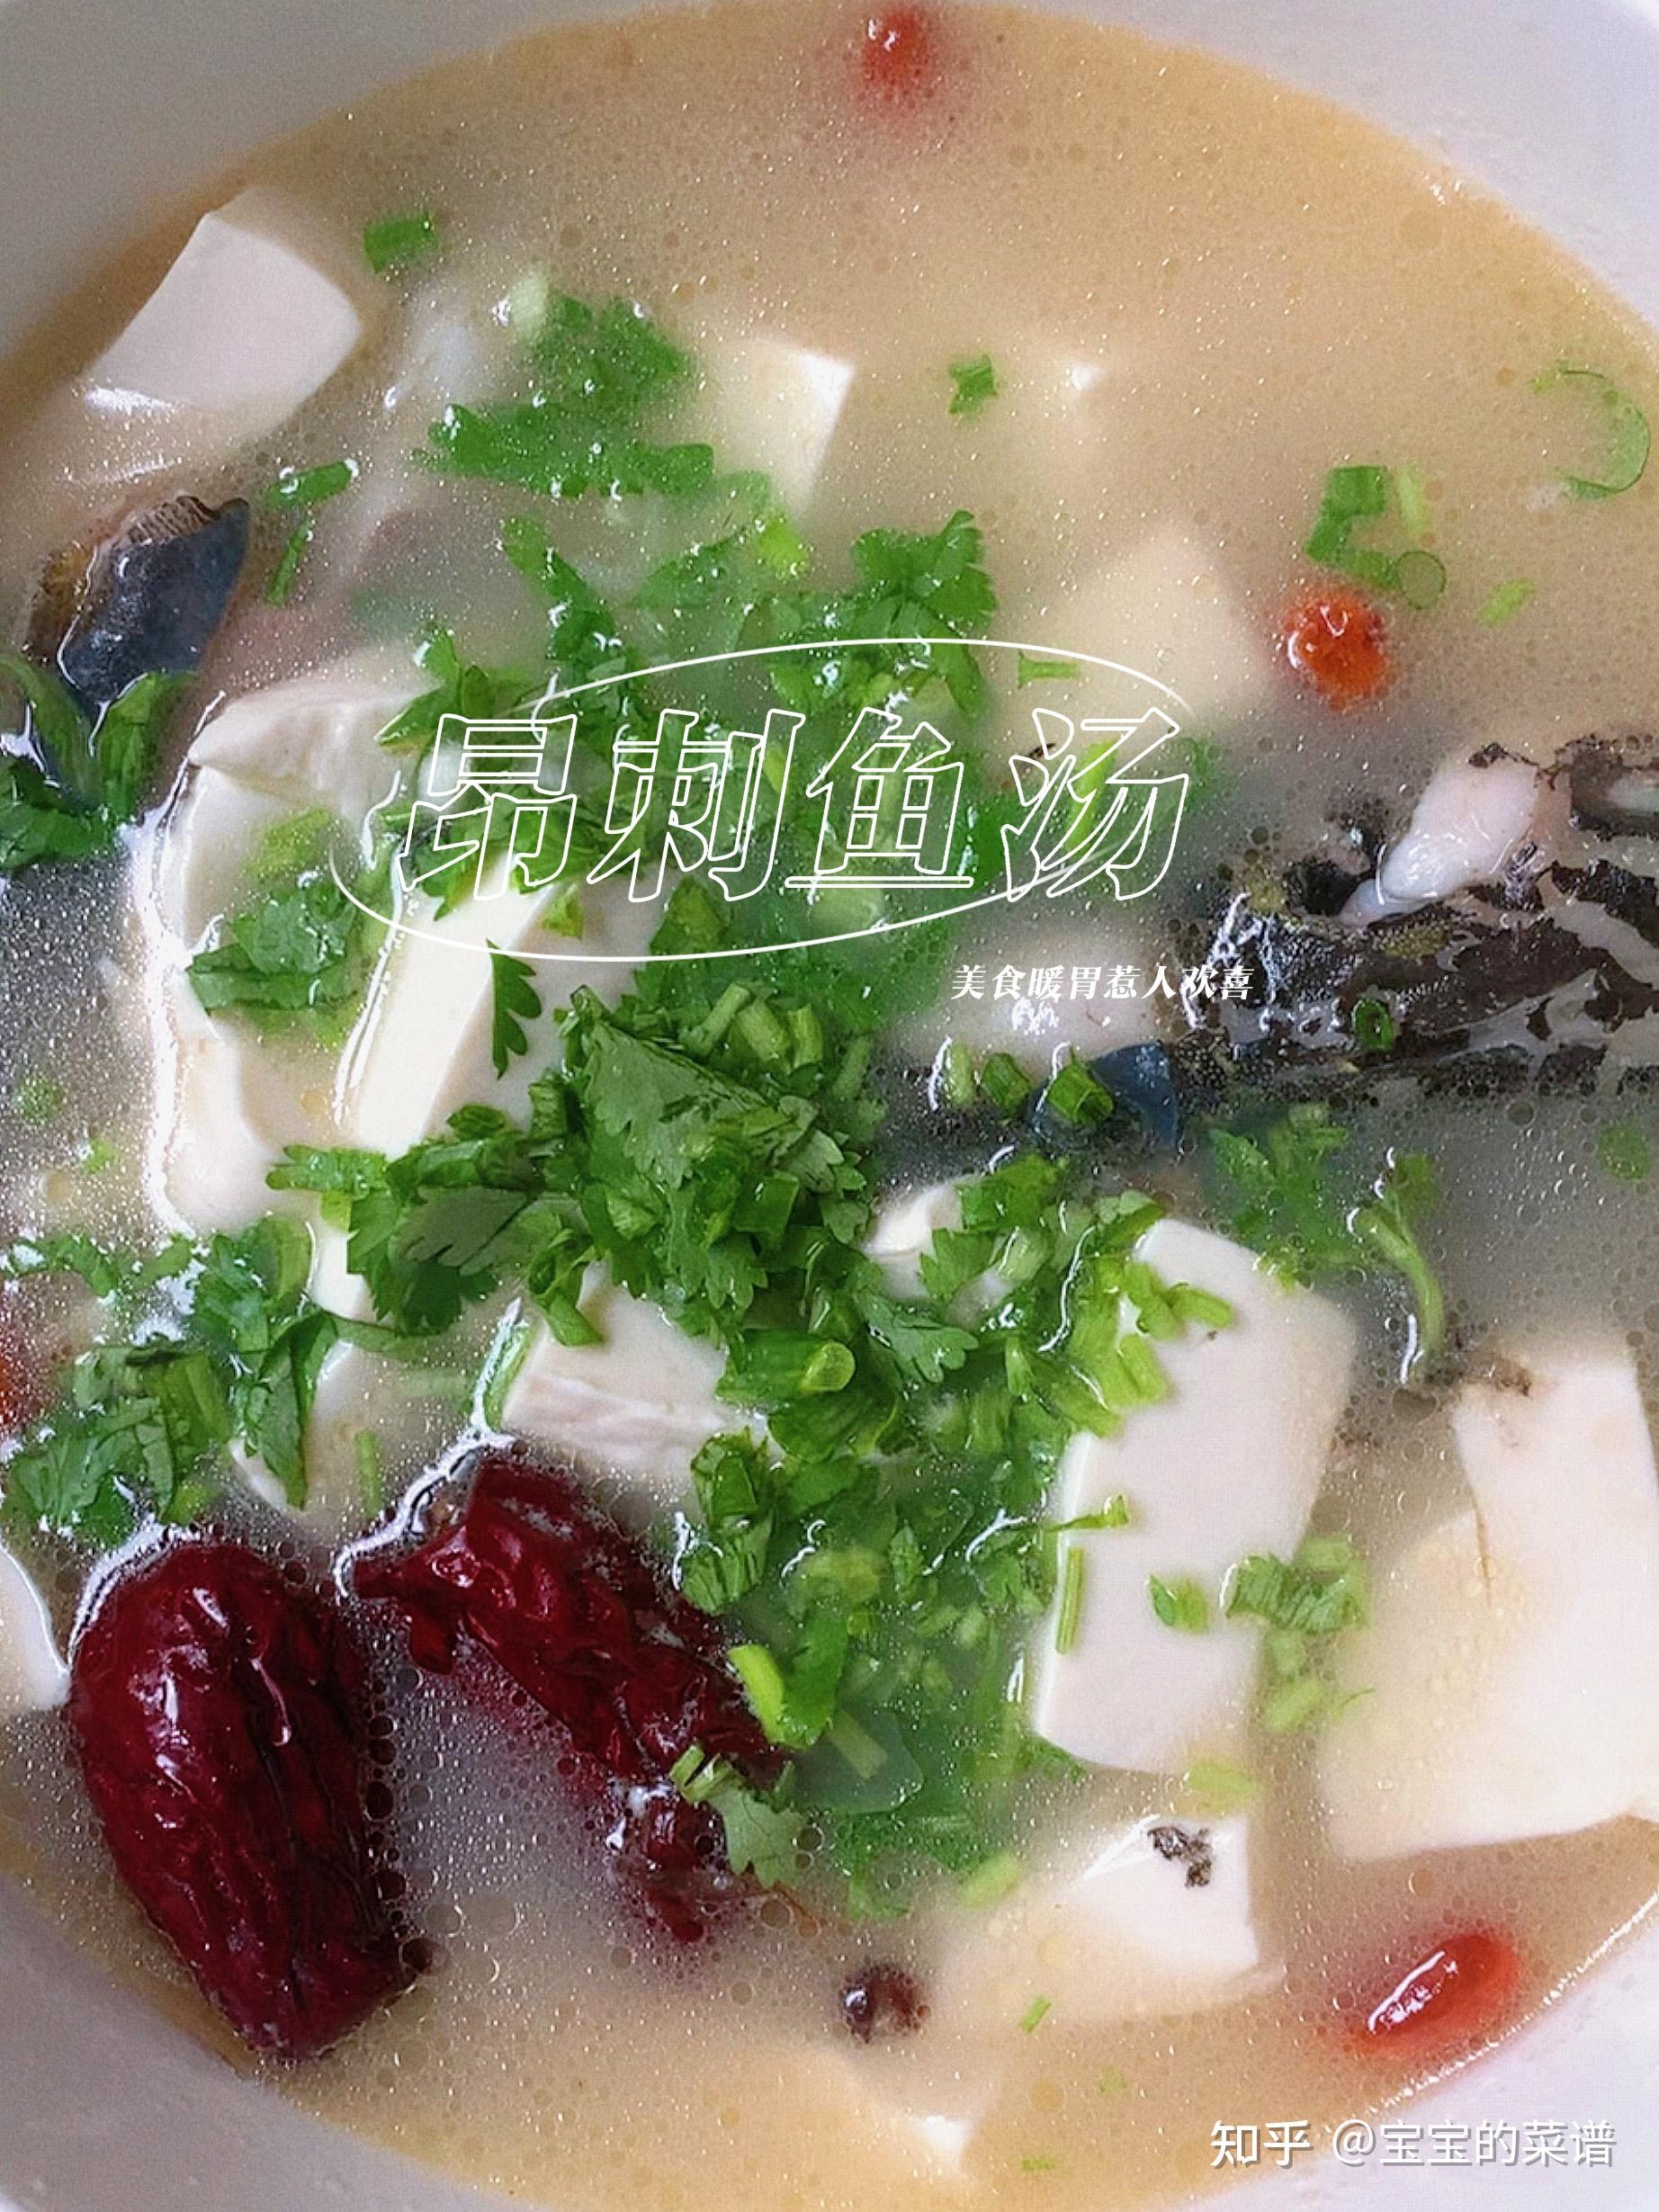 姬松茸茶树菇墨鱼汤怎么做_姬松茸茶树菇墨鱼汤的做法_叶子美味_豆果美食